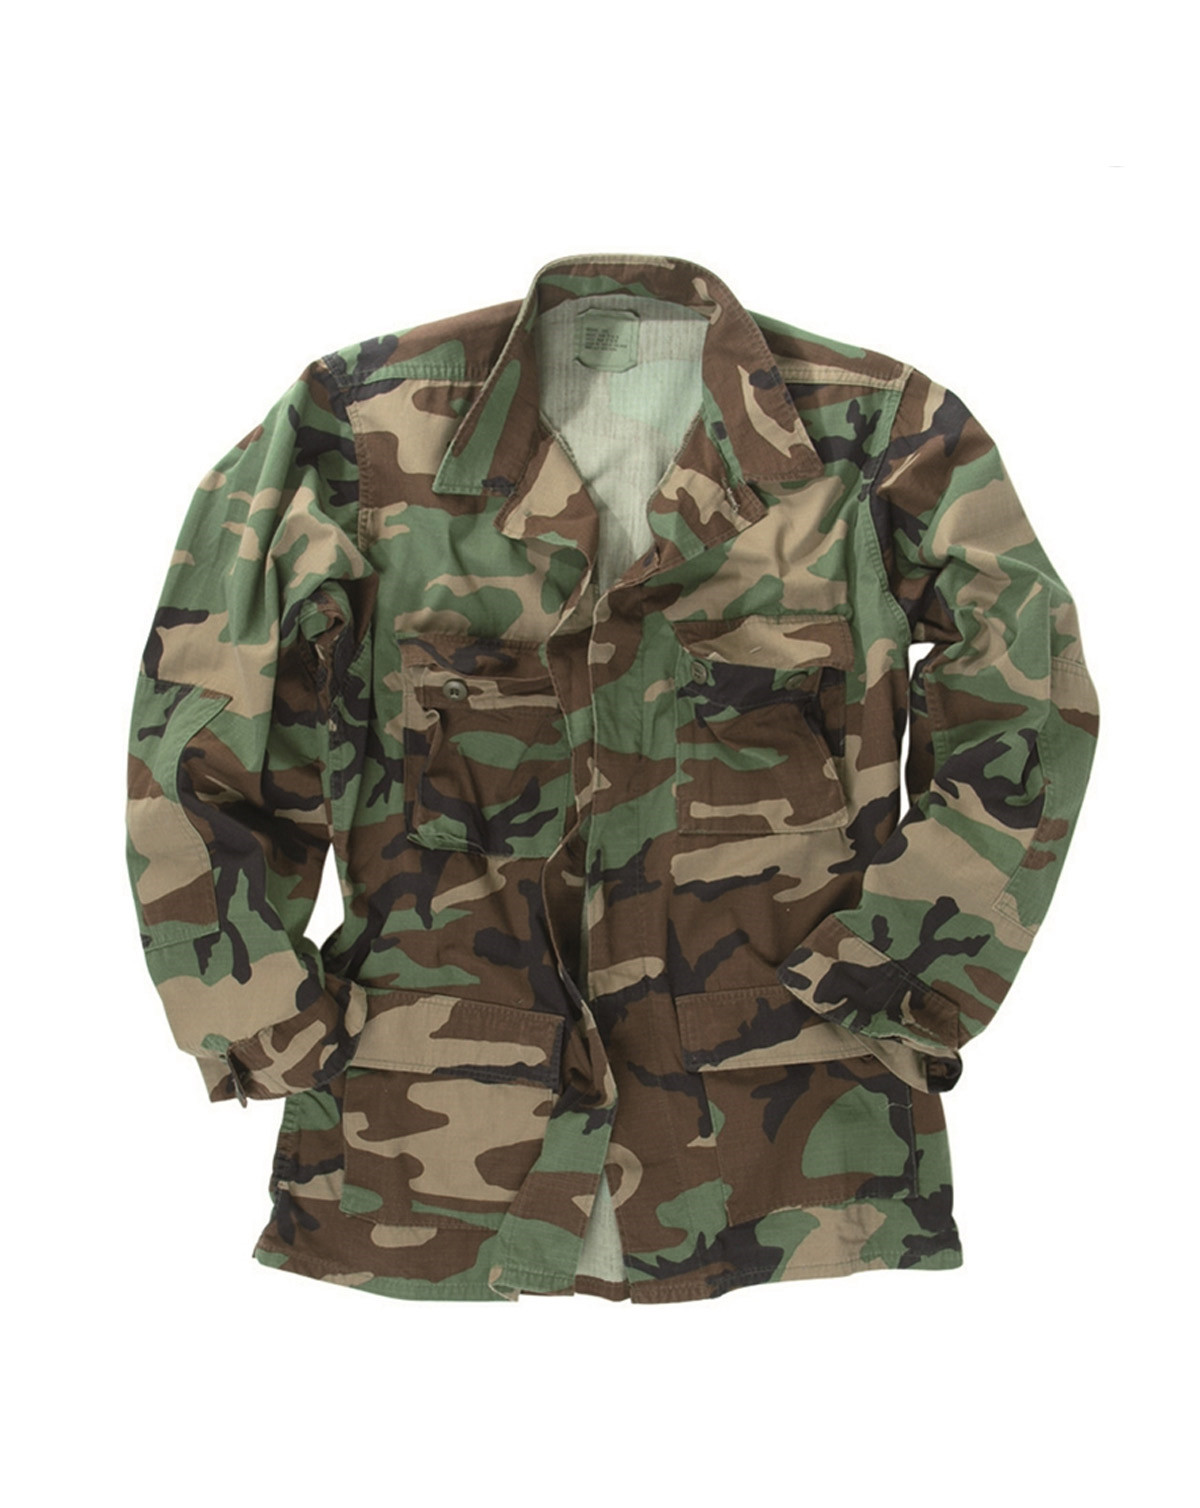 Военные формы купить интернет. Woodland BDU Military Jacket. Куртка НАТО вудланд. Камуфляж BDU Woodland. Камуфляж USMC Woodland BDU.